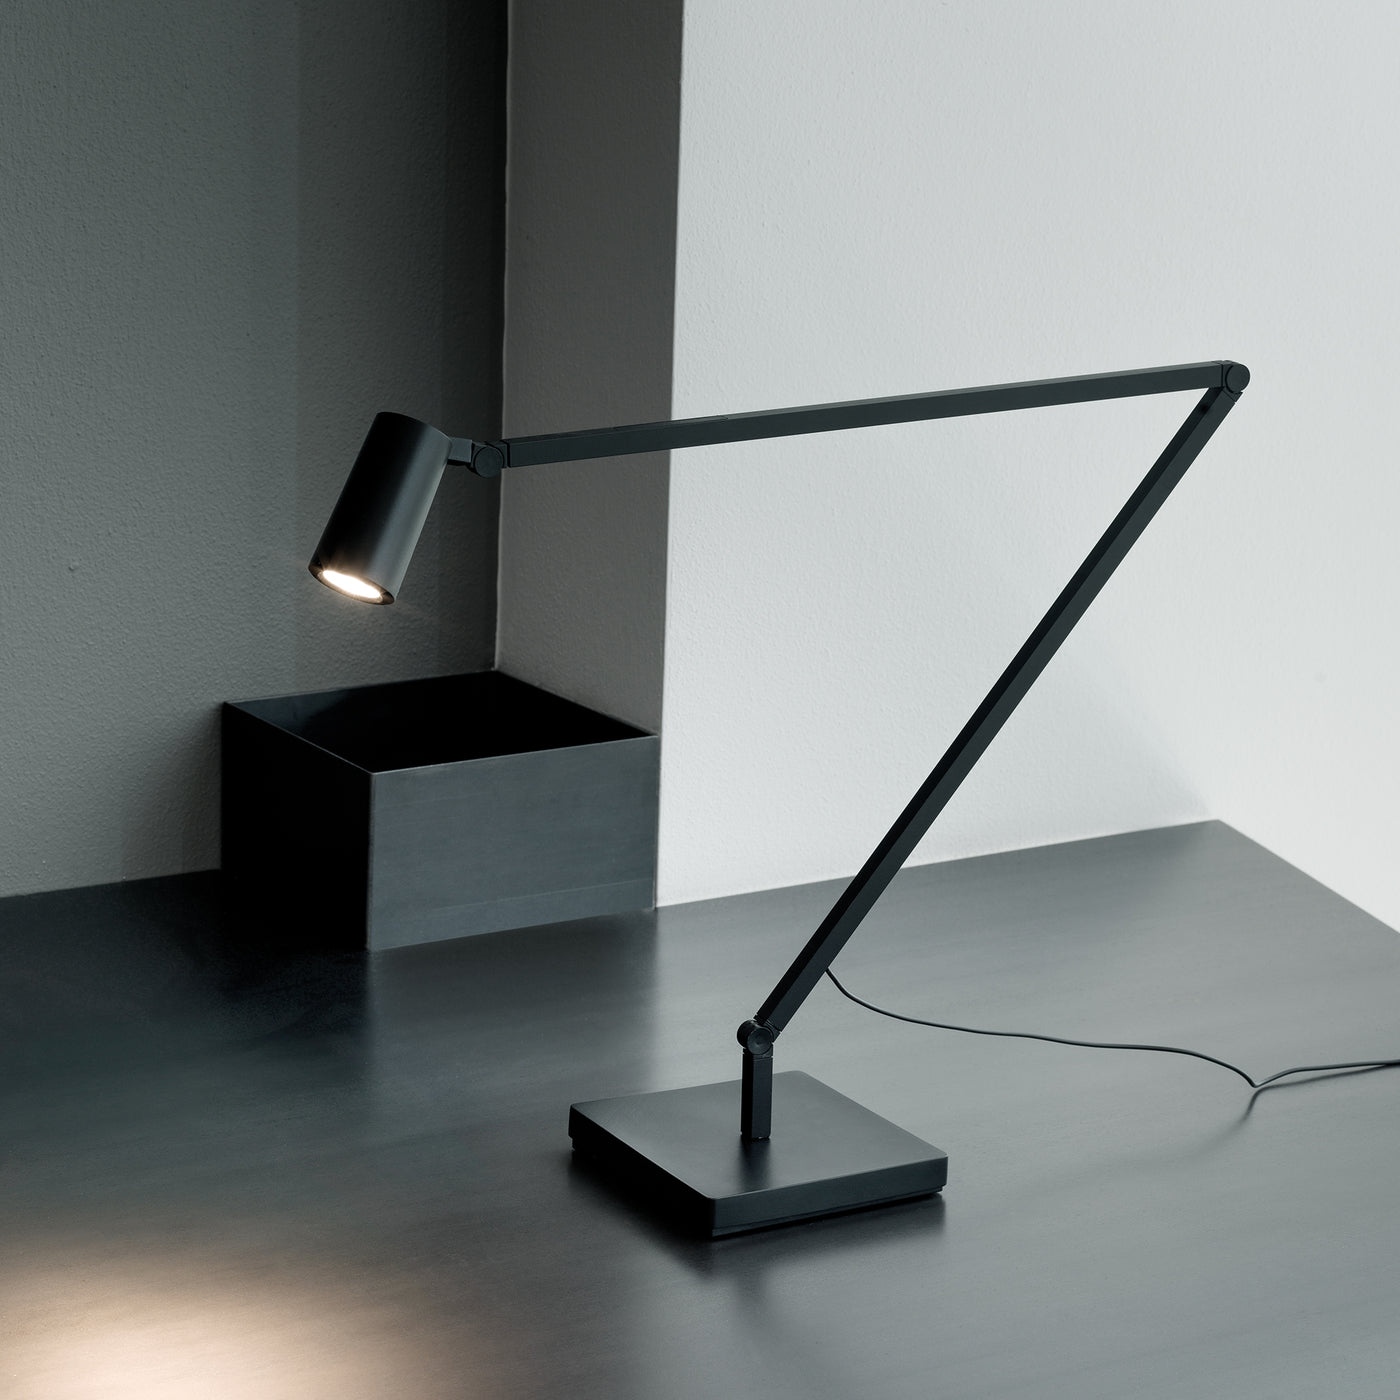 černá stolní lampa Nemo, Romein concept store, luxusní osvětlení do pokoje, stolní lampa